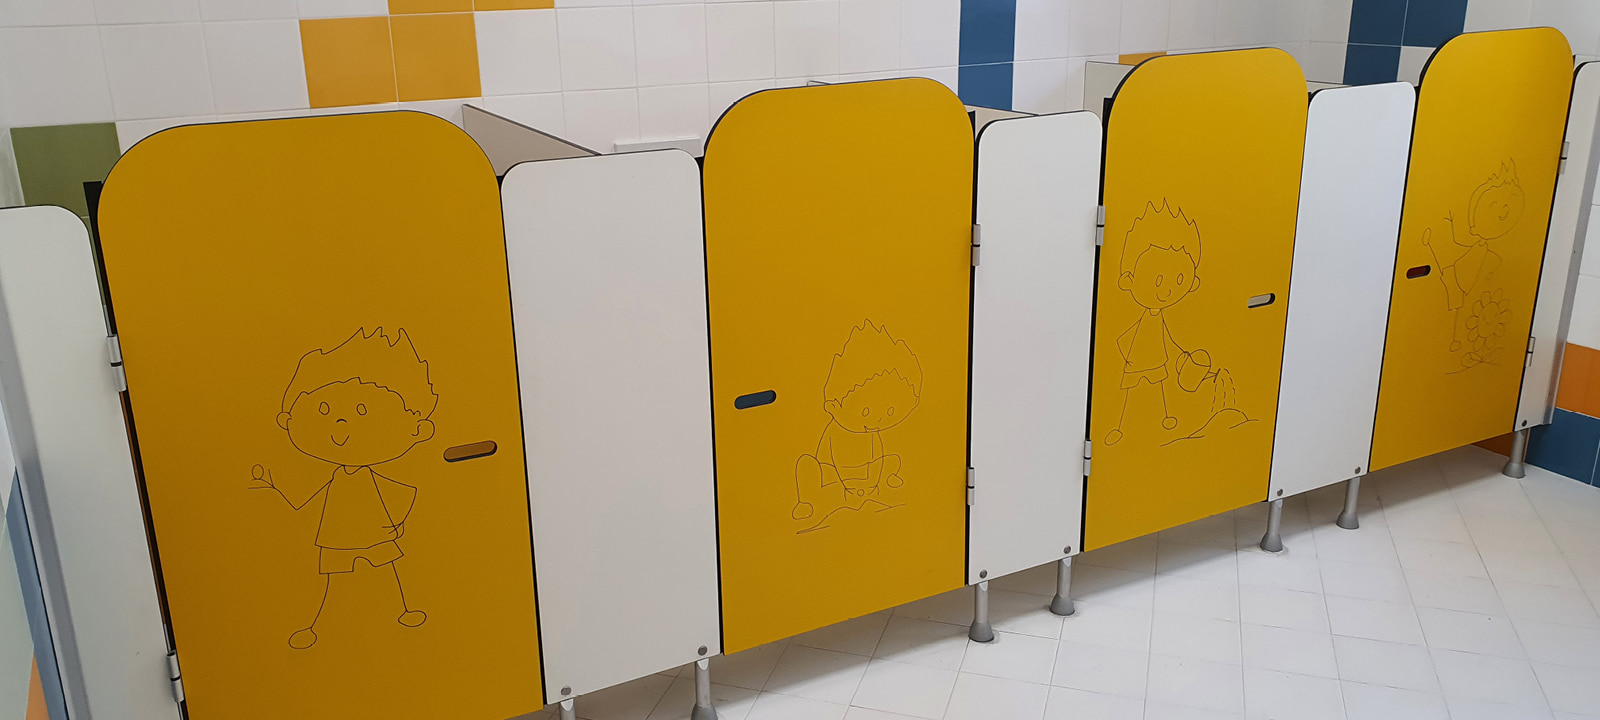 Soema: progettazione di bagni scolastici